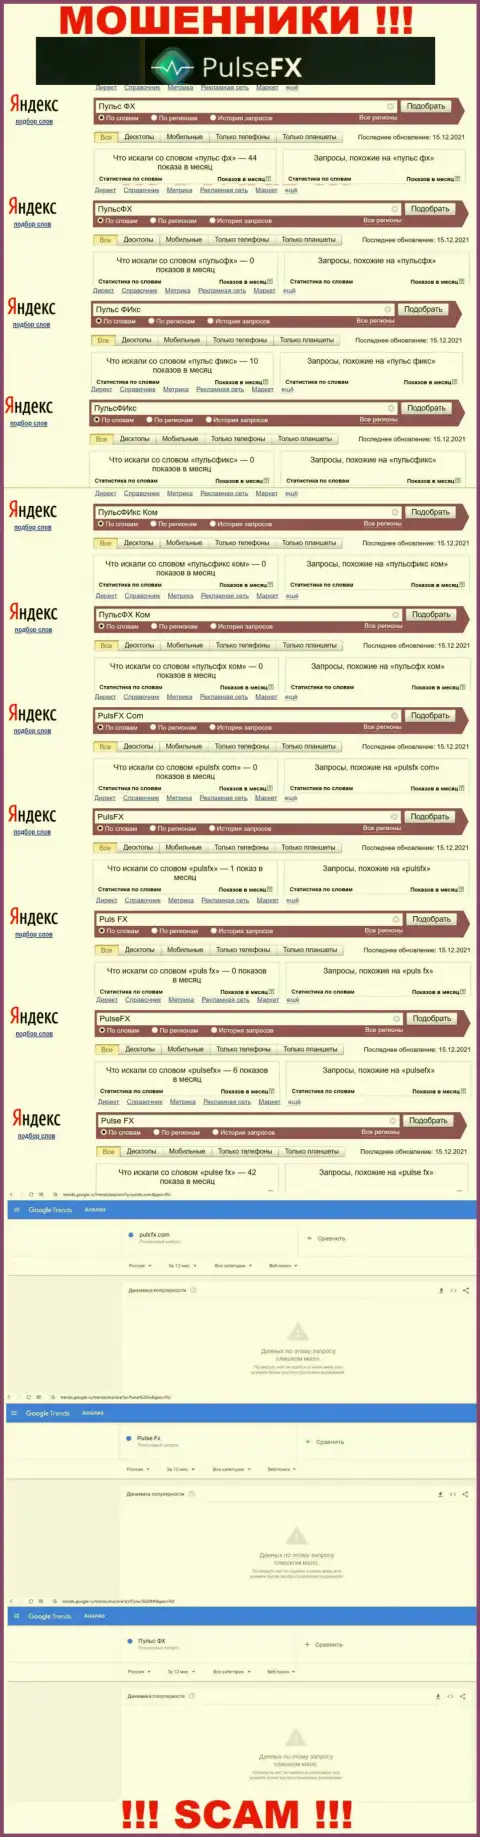 Суммарное число поисковых запросов в интернете по бренду мошенников PulseFX